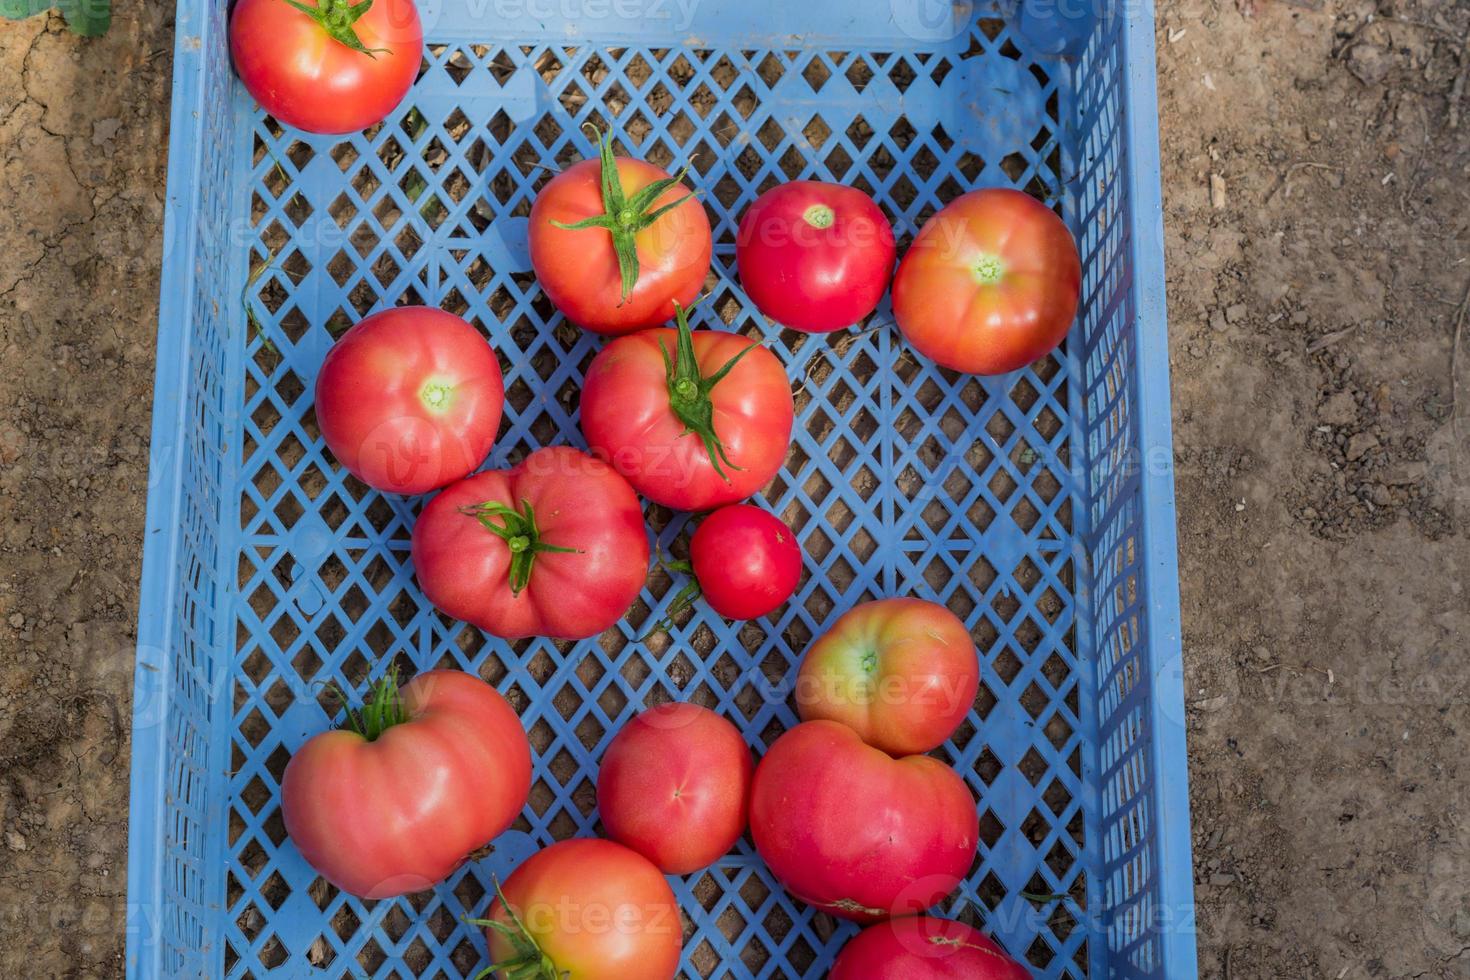 colheita fresca de tomate orgânico em uma caixa. nova safra de legumes saborosos recém colhidos em um recipiente de plástico foto